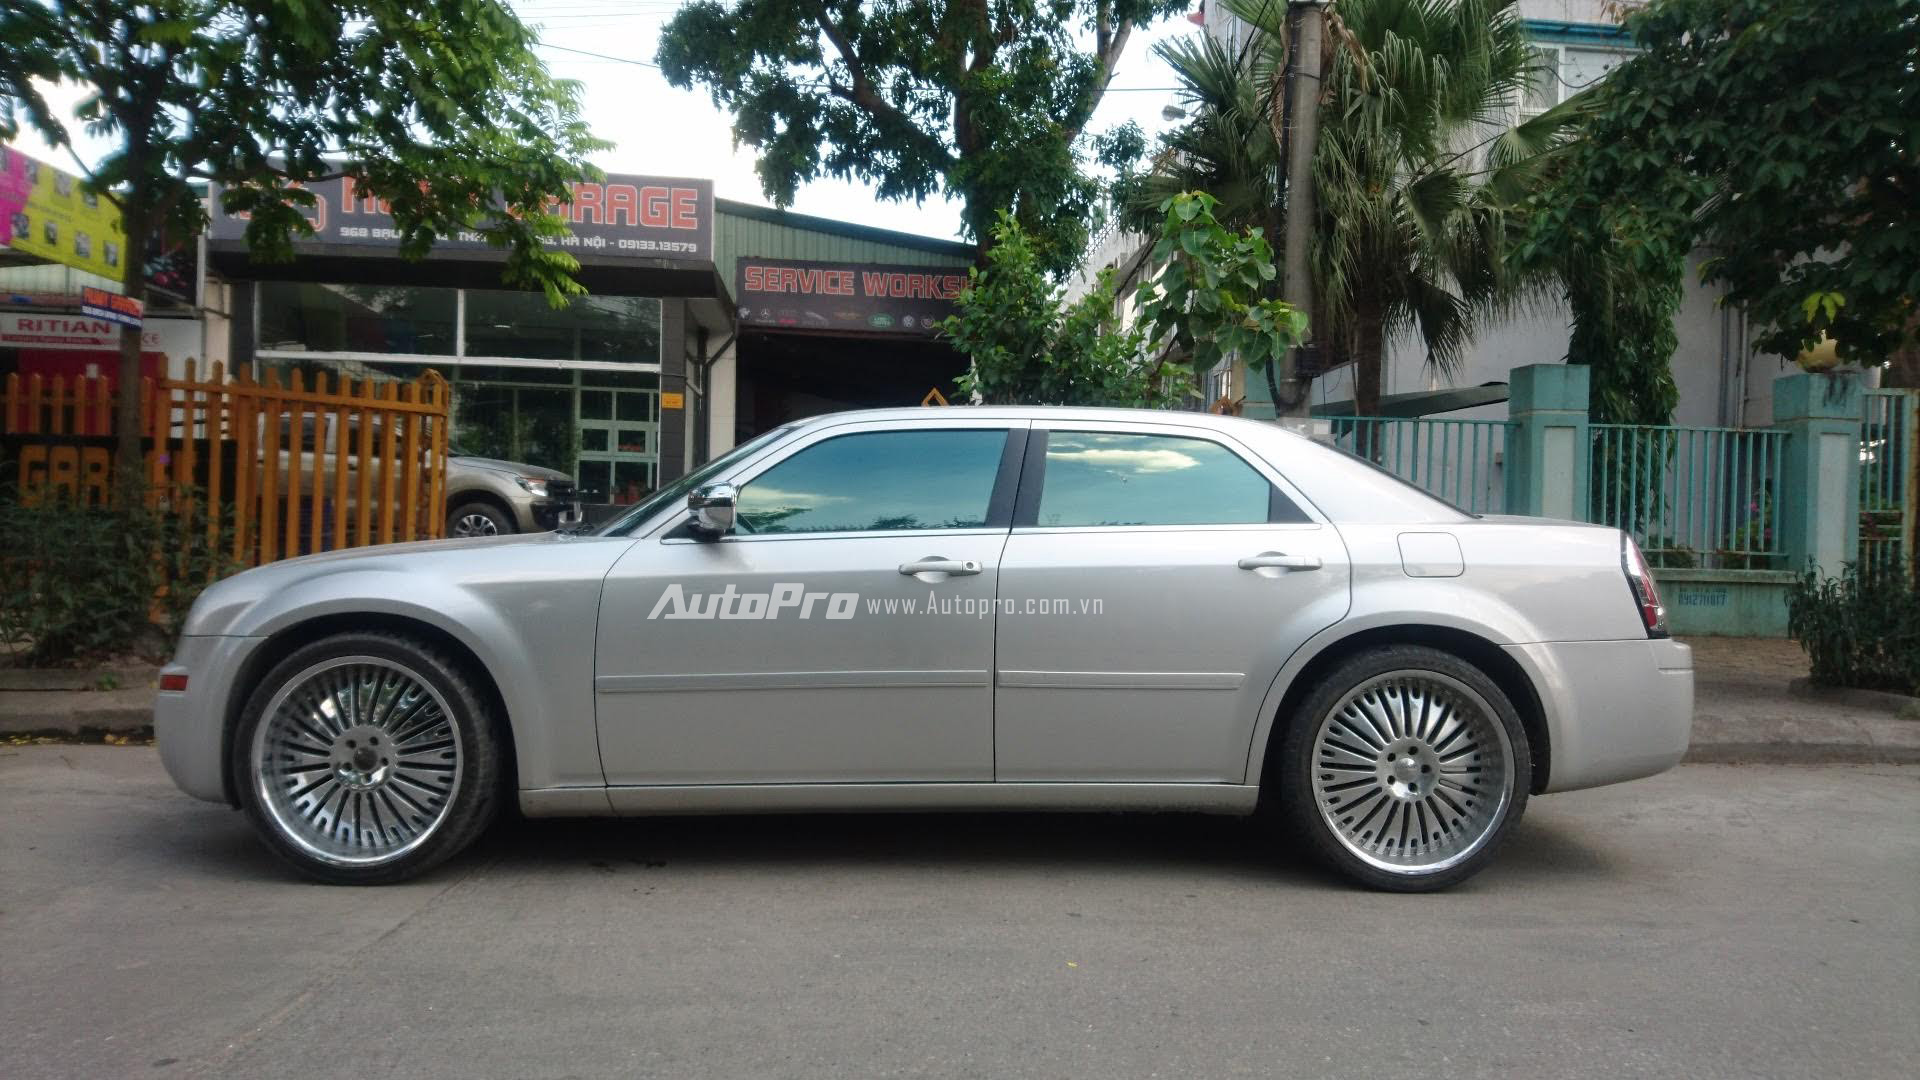 
Chiếc xe Chrysler 300 ban đầu có màu bạc và được một chủ sở hữu tại Hà Nội quyết định thay đổi lại phần ngoại thất để tăng thêm nét cá tính và thoả mãn sở thích cá nhân của mình.
